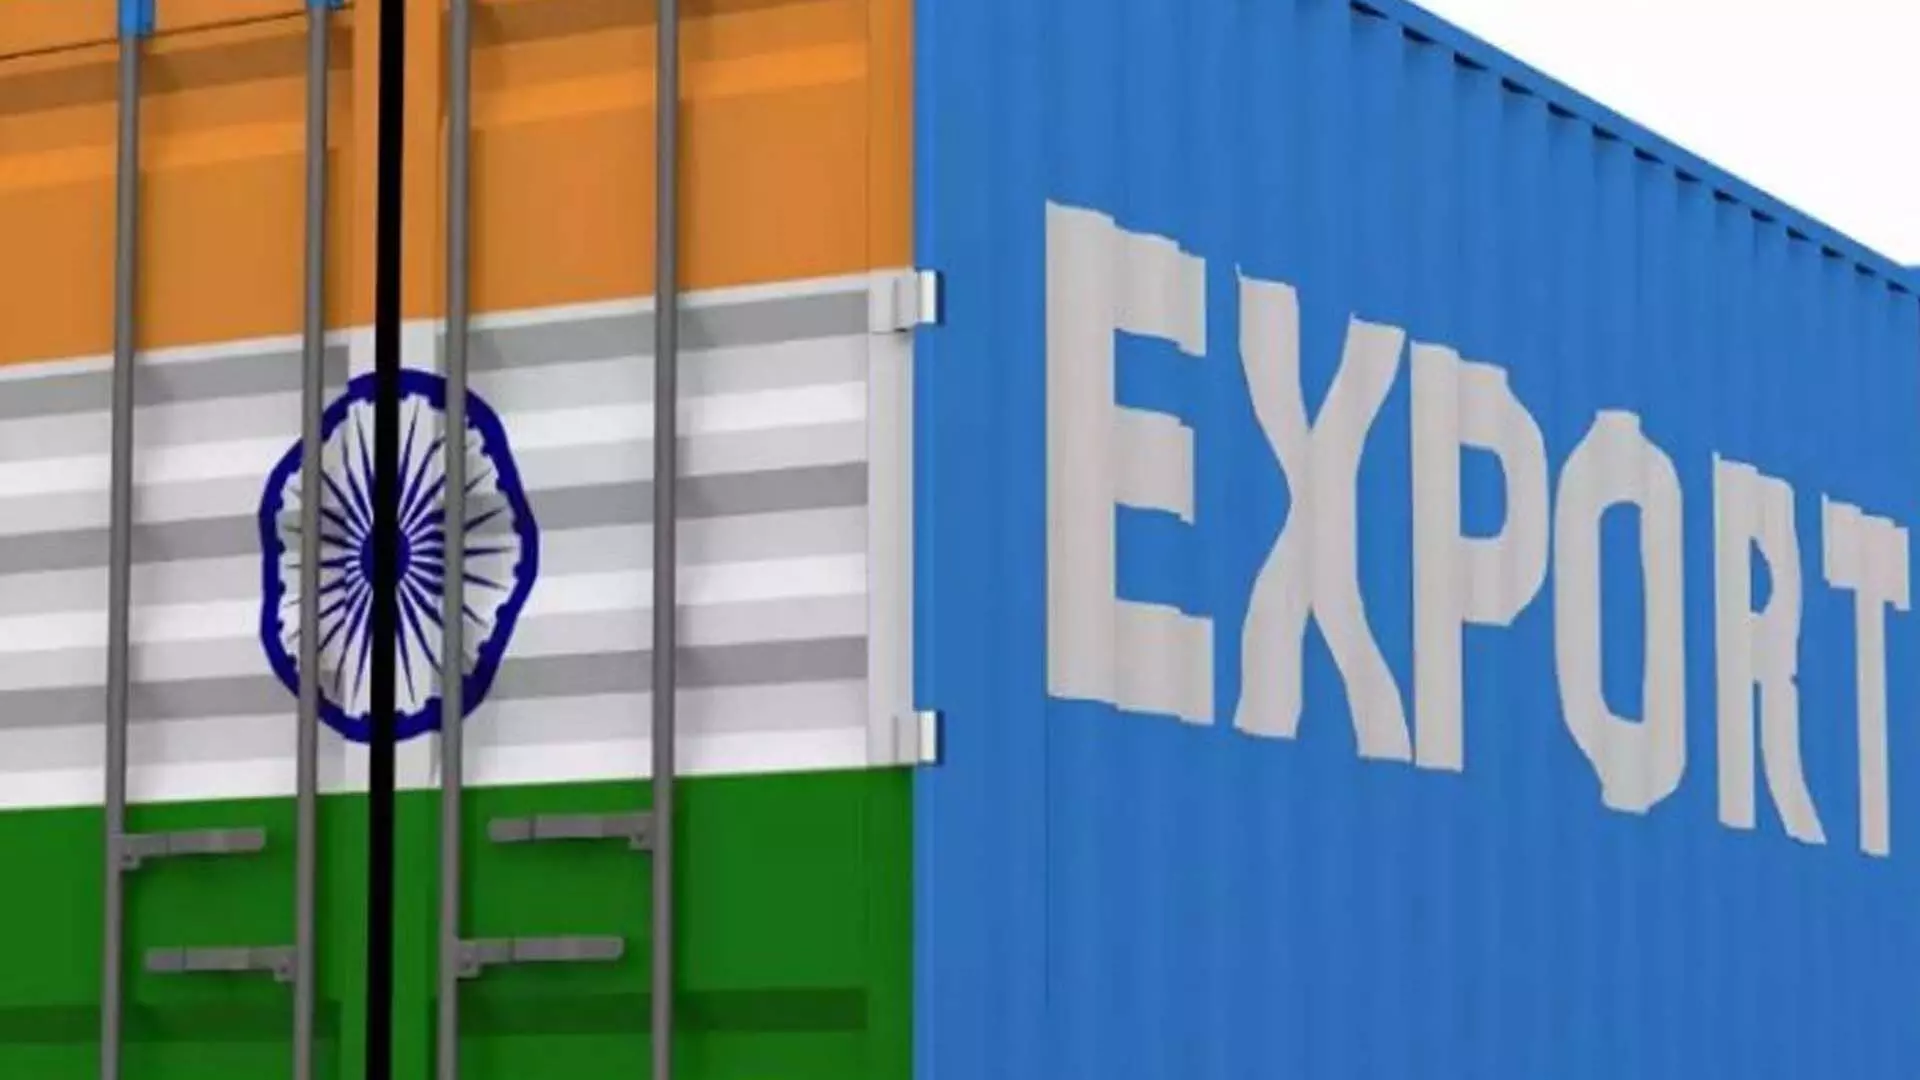 Delhi News: जून में भारत का निर्यात 2.56% बढ़कर 35.2 अरब डॉलर पर पहुंचा